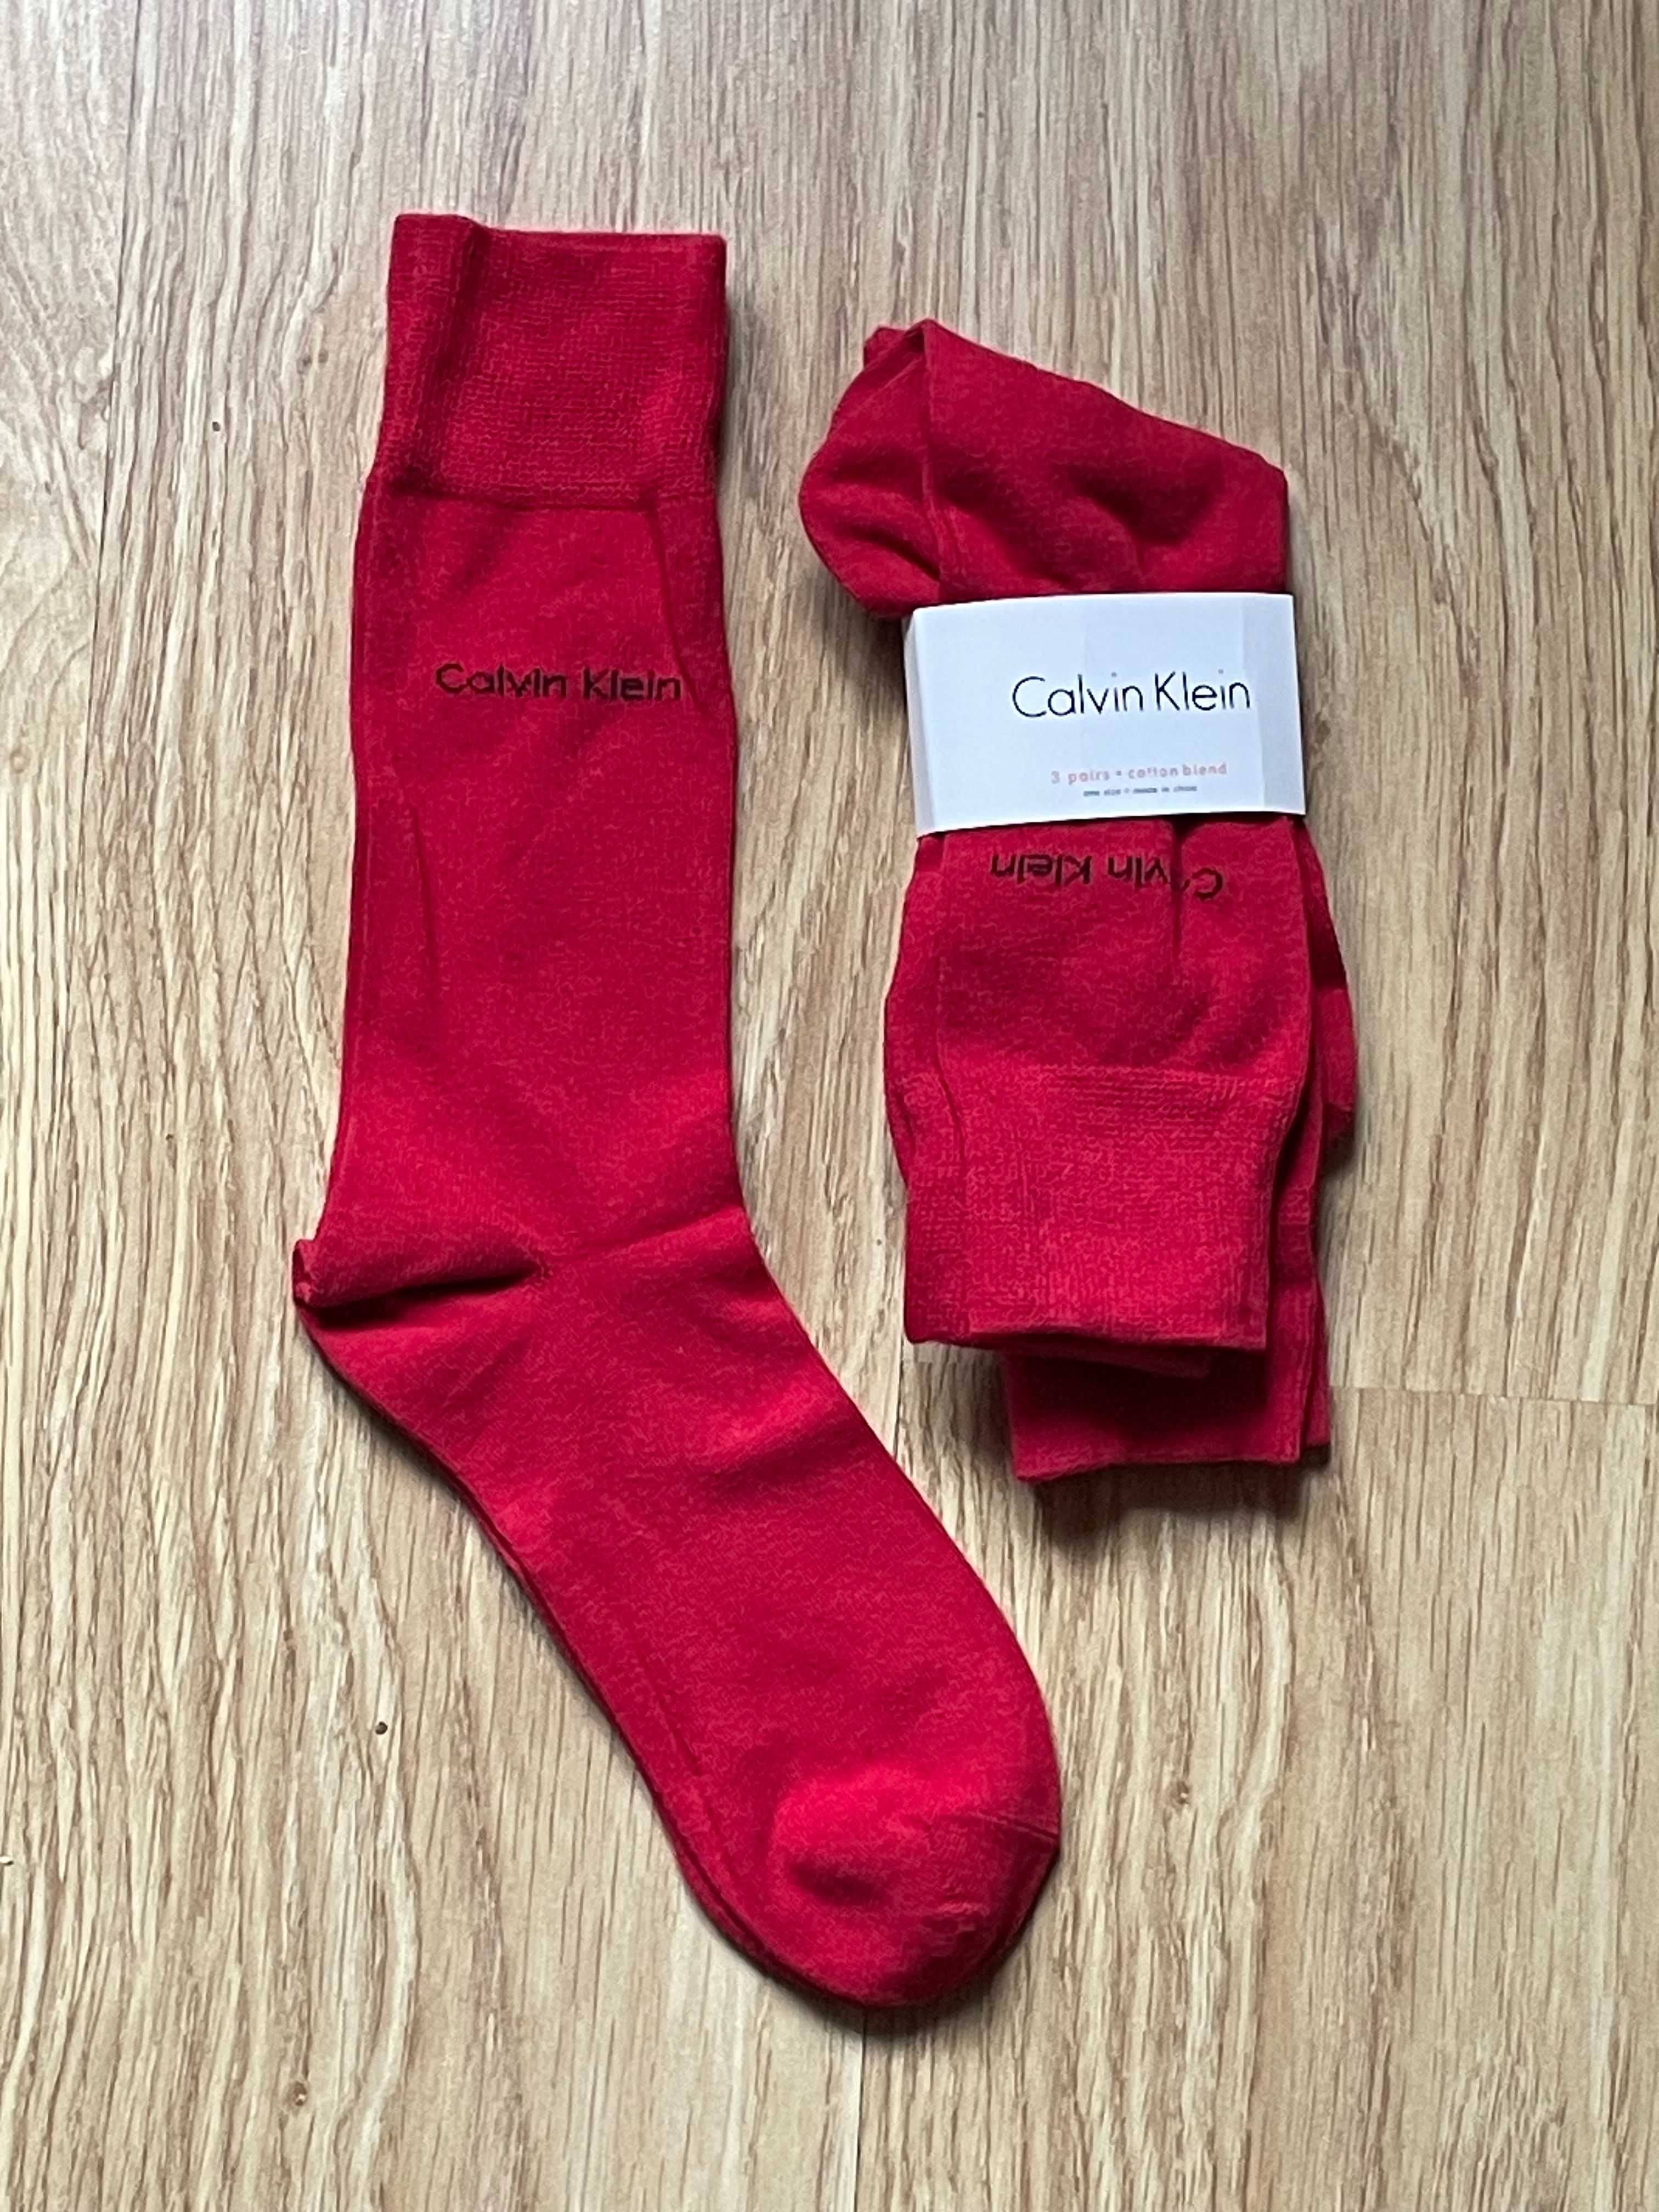 Skarpetki męskie Calvin Klein r. 37-41 3 pary długie kolor czerwony